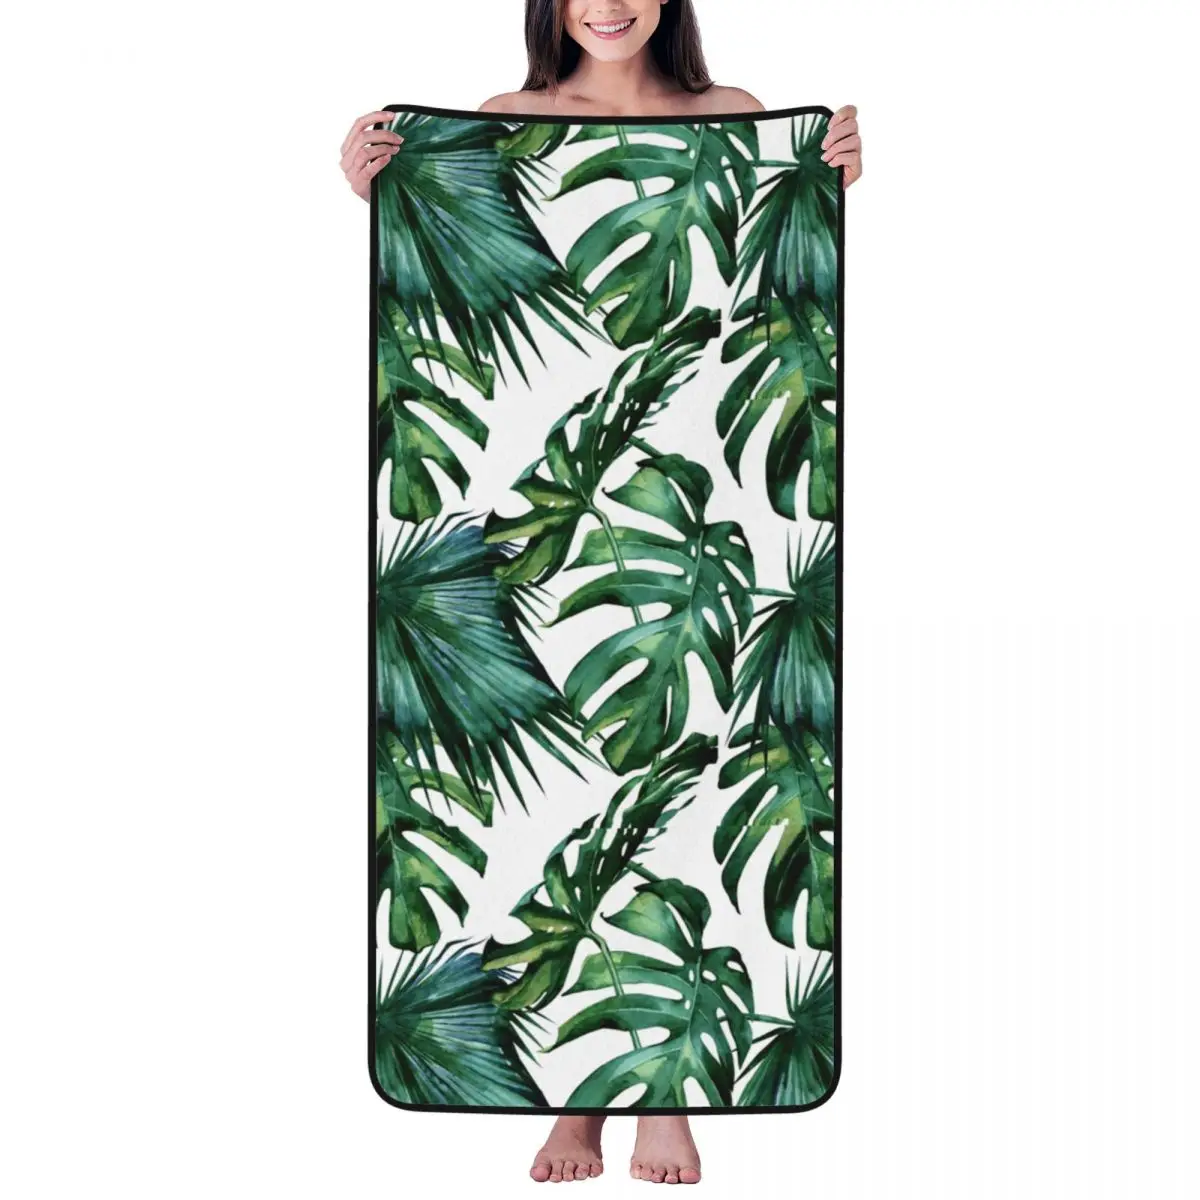 

Пляжное полотенце с пальмовыми листьями для взрослых и детей, банное полотенце из микрофибры, одеяло для кемпинга, бассейна, путешествий, пляжного спортзала